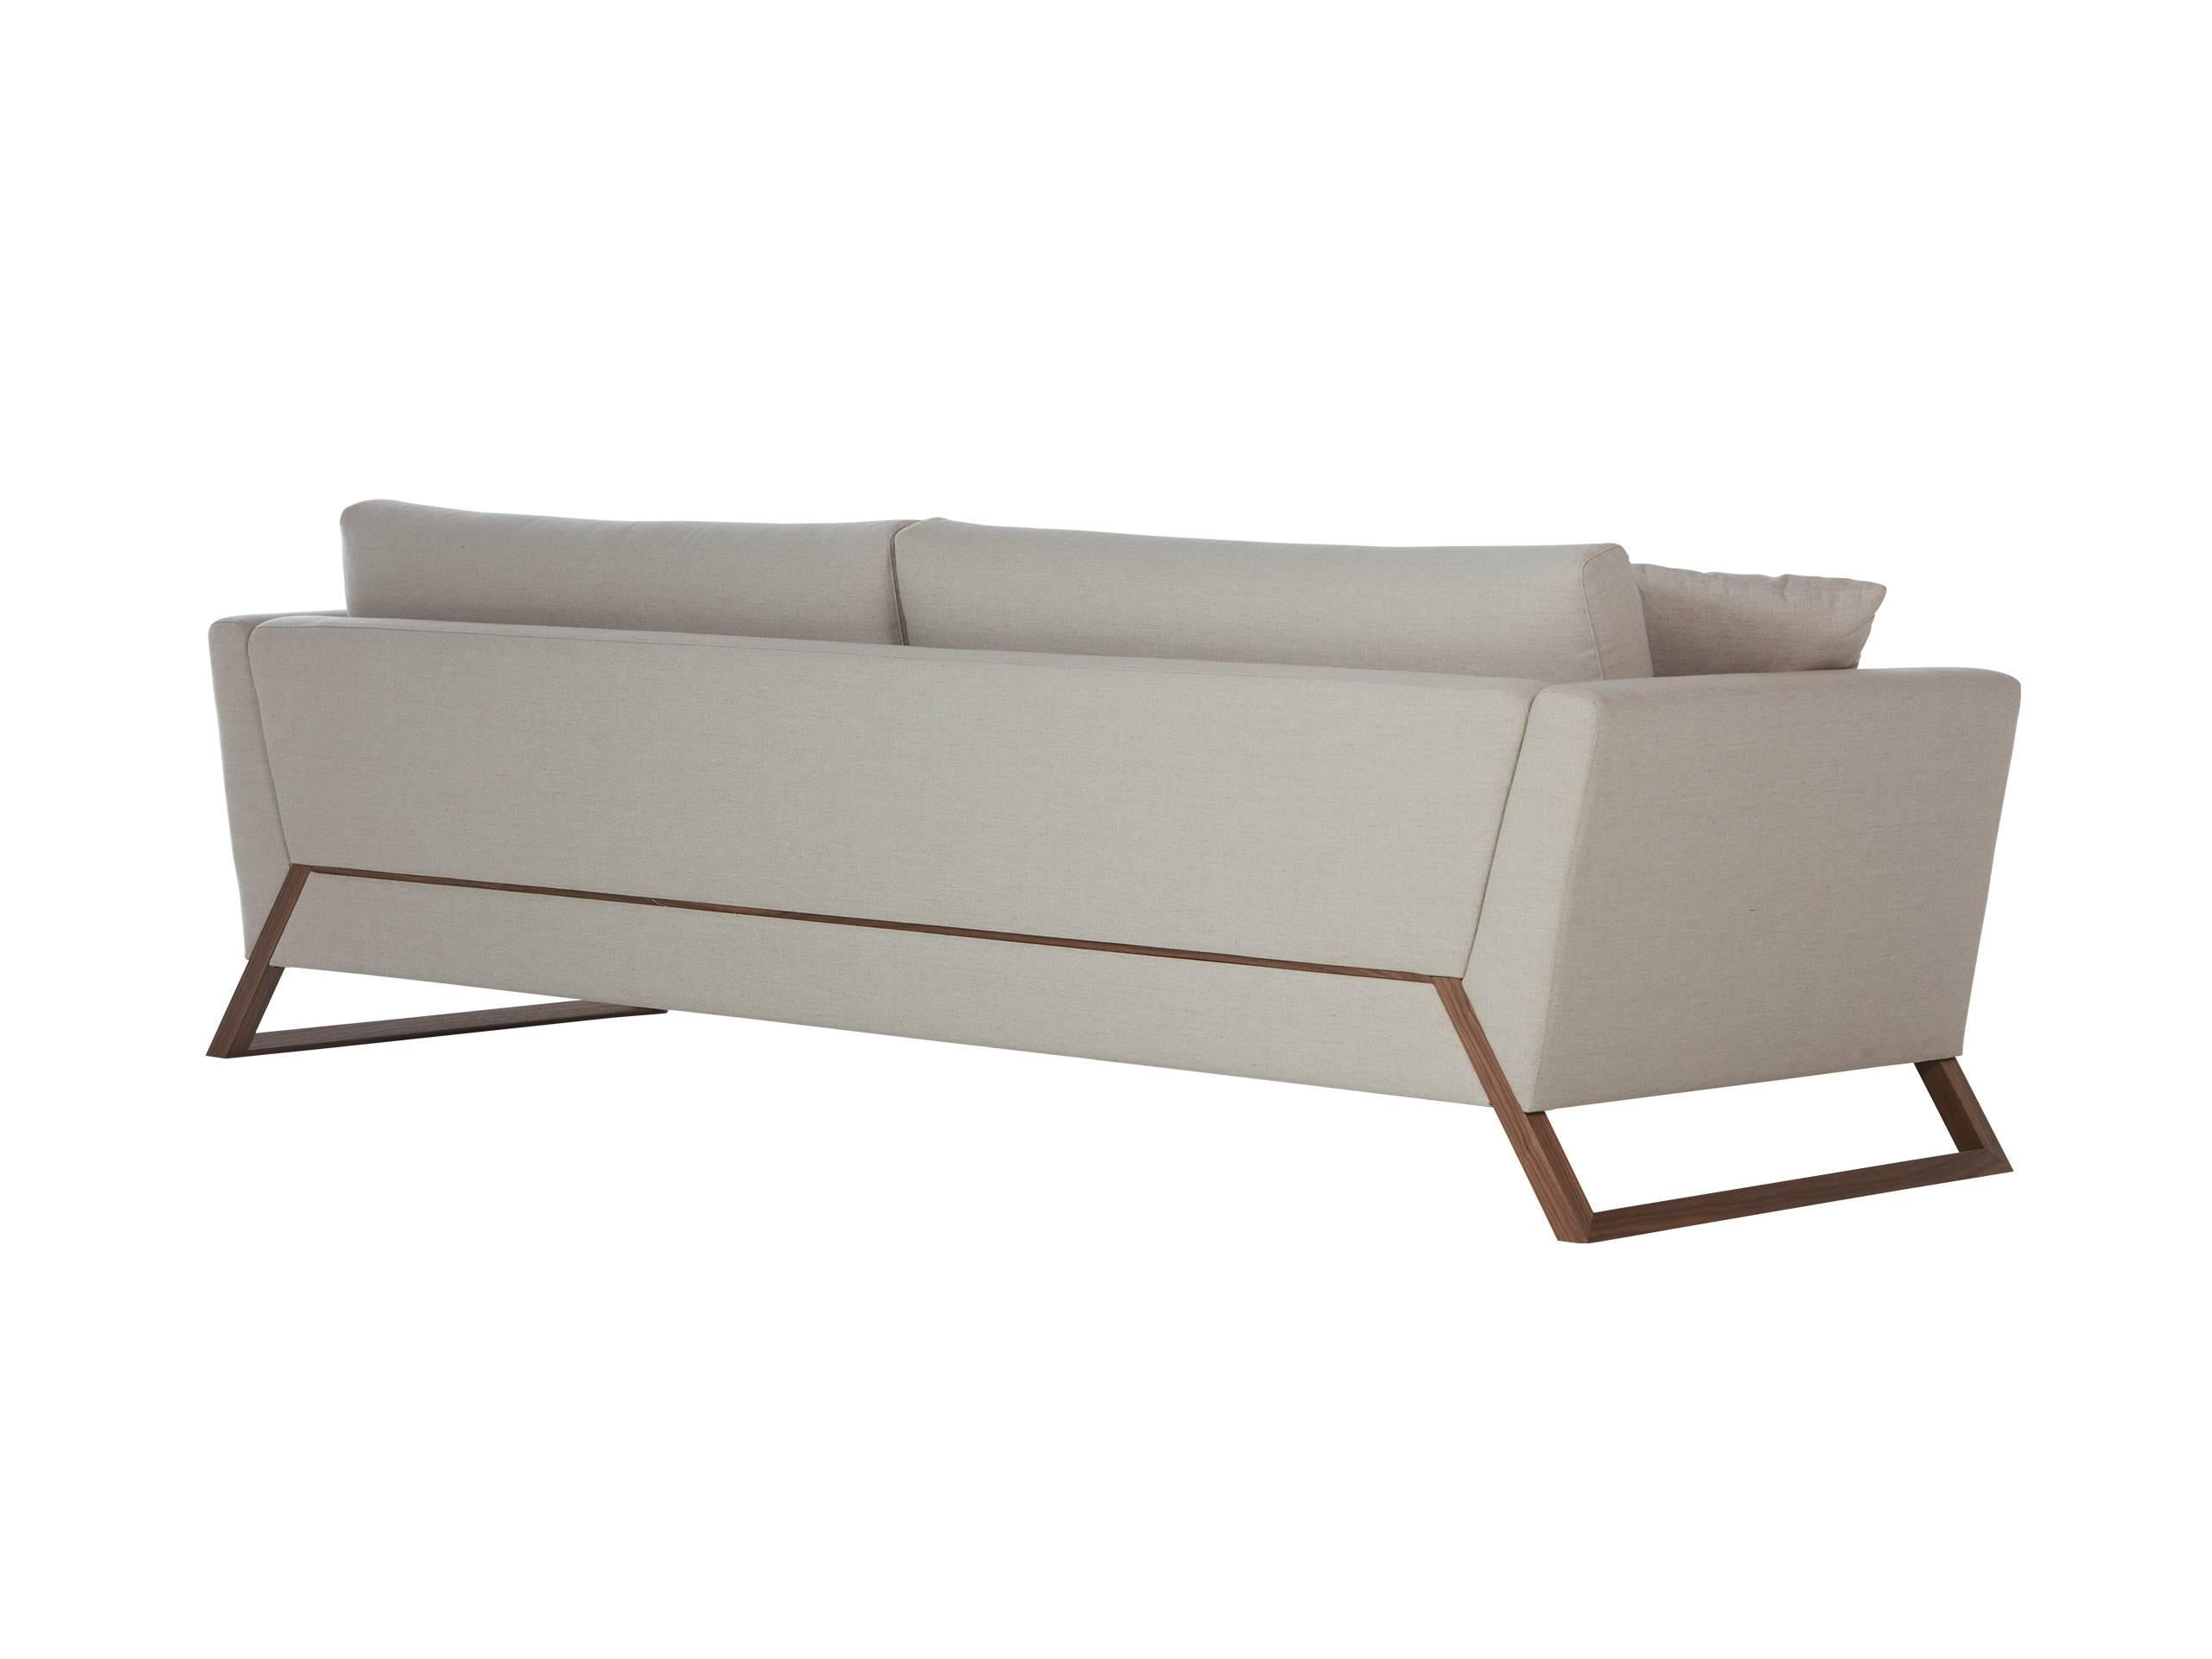 Mantiqueira Brazilian Contemporary Wood Upholstered Sofa by Lattoog (Brasilianisch)